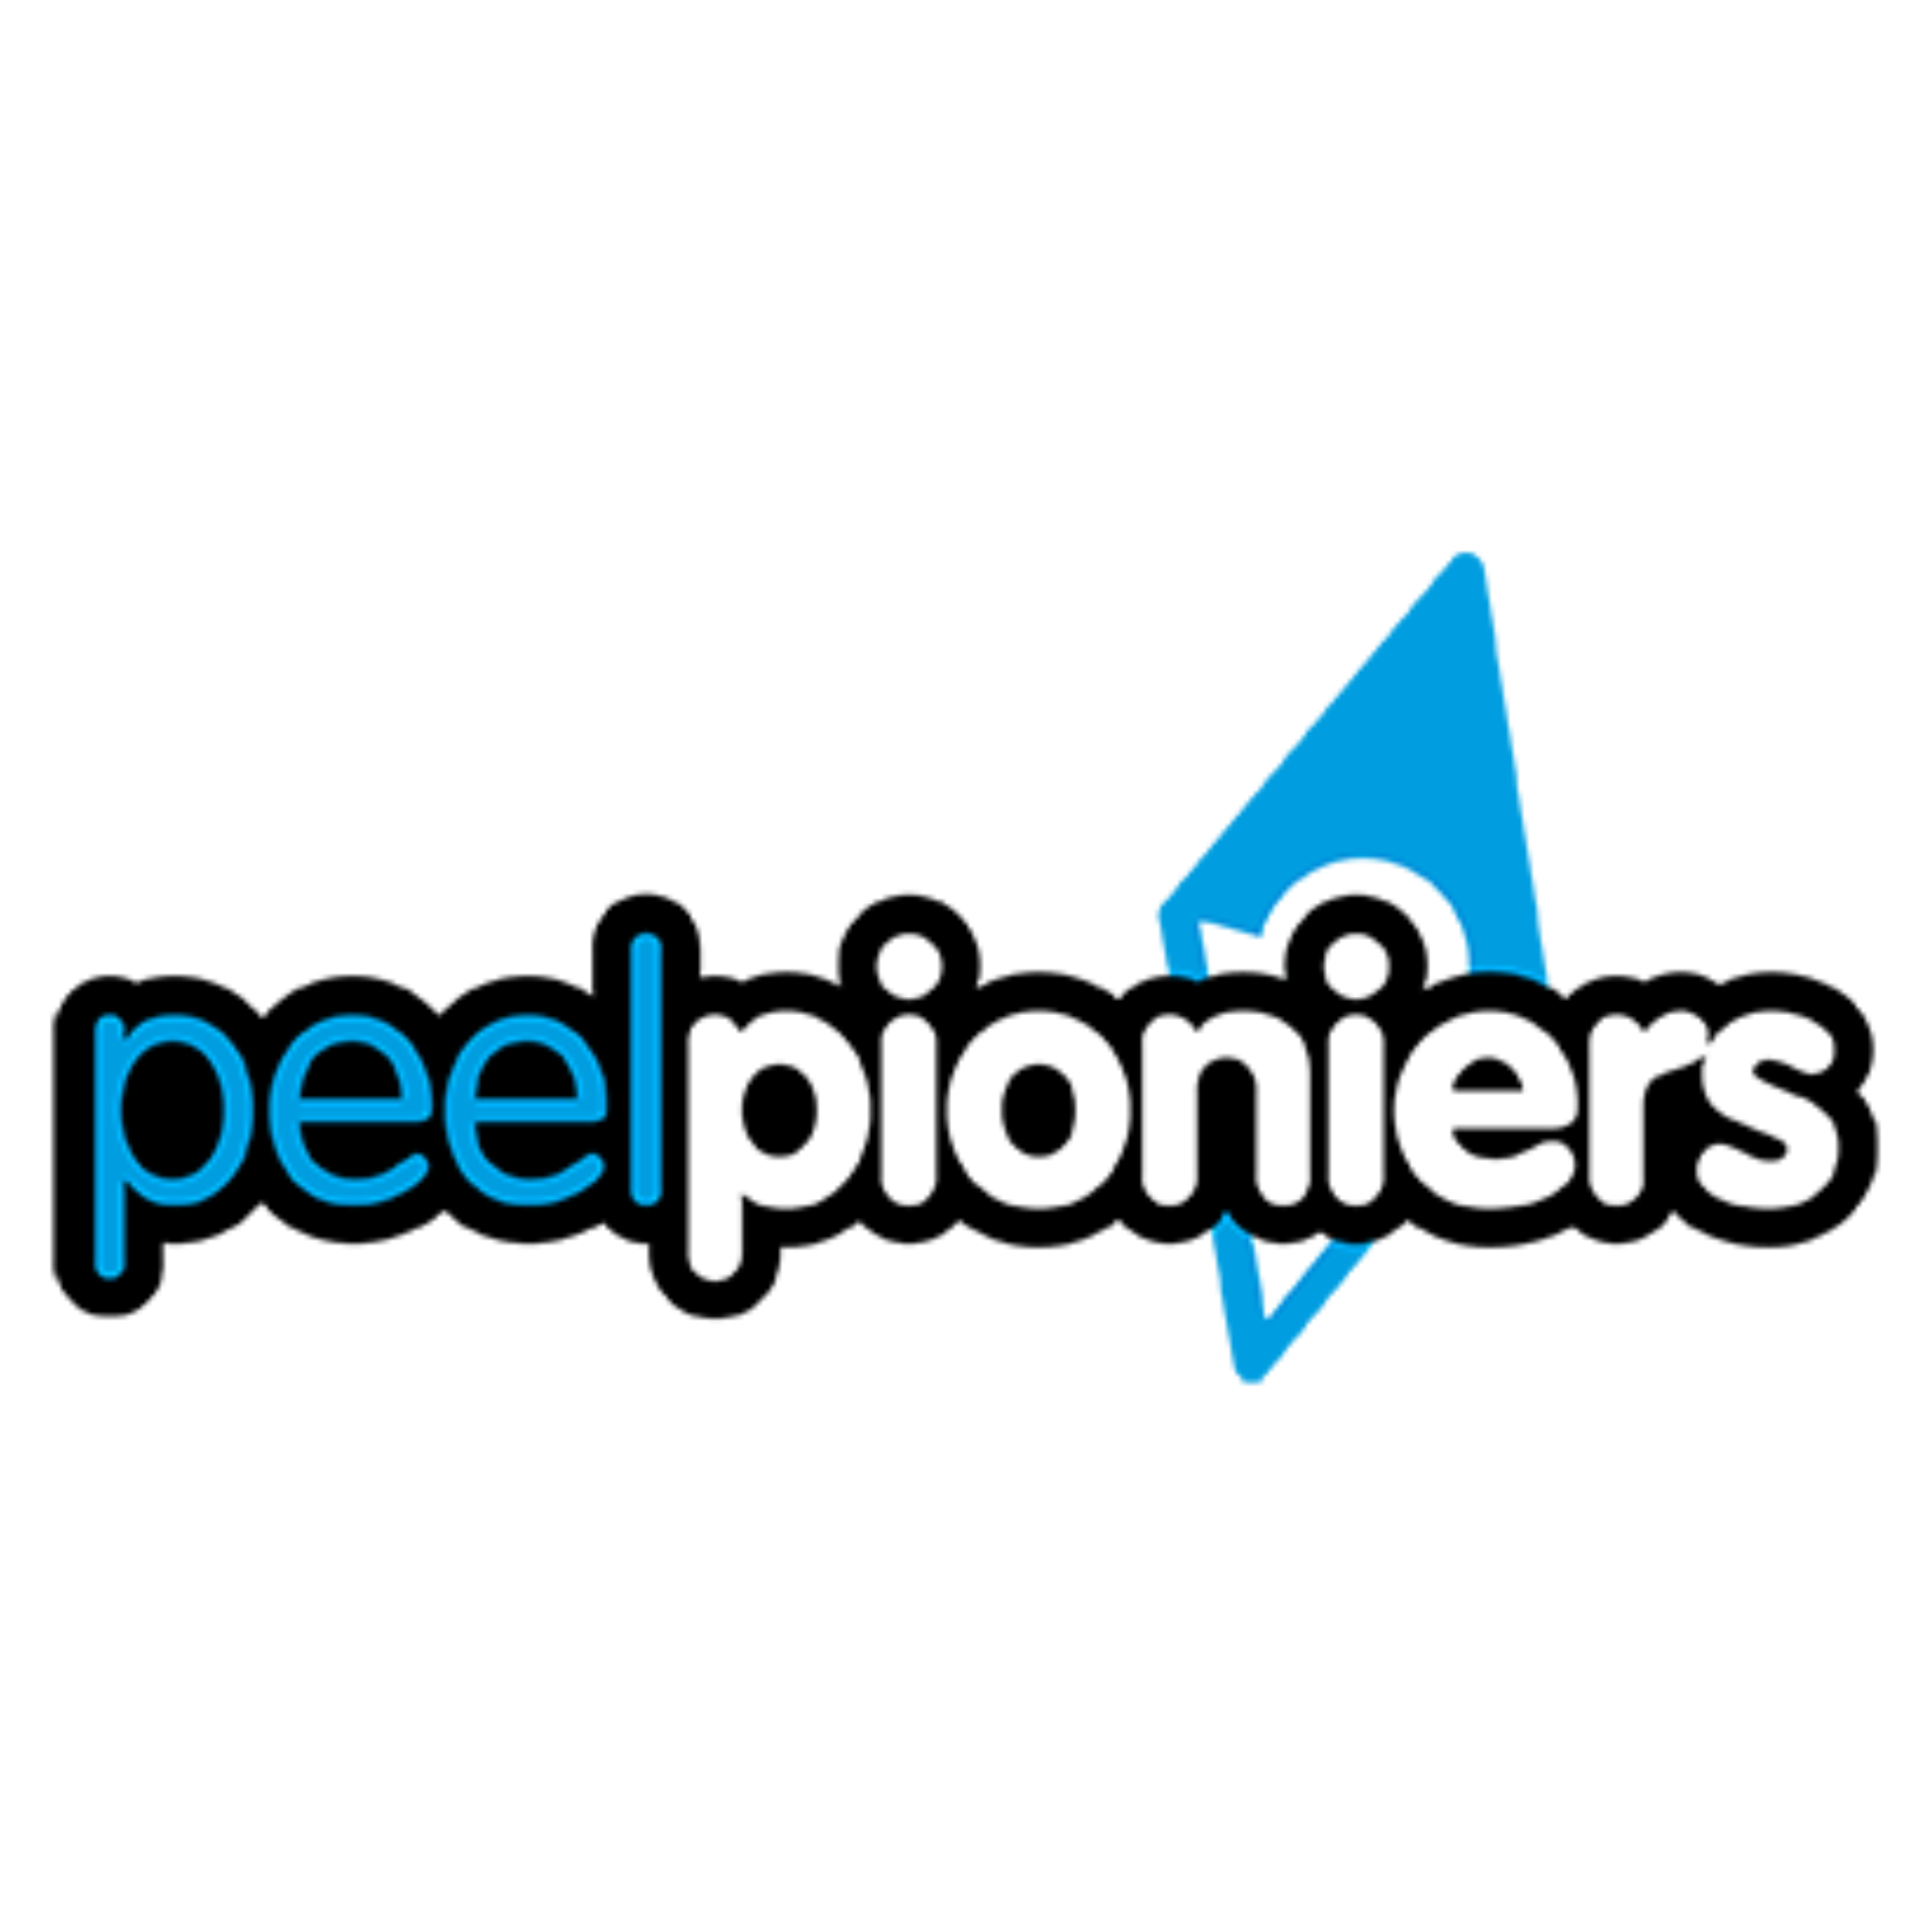 Peelpioniers logo